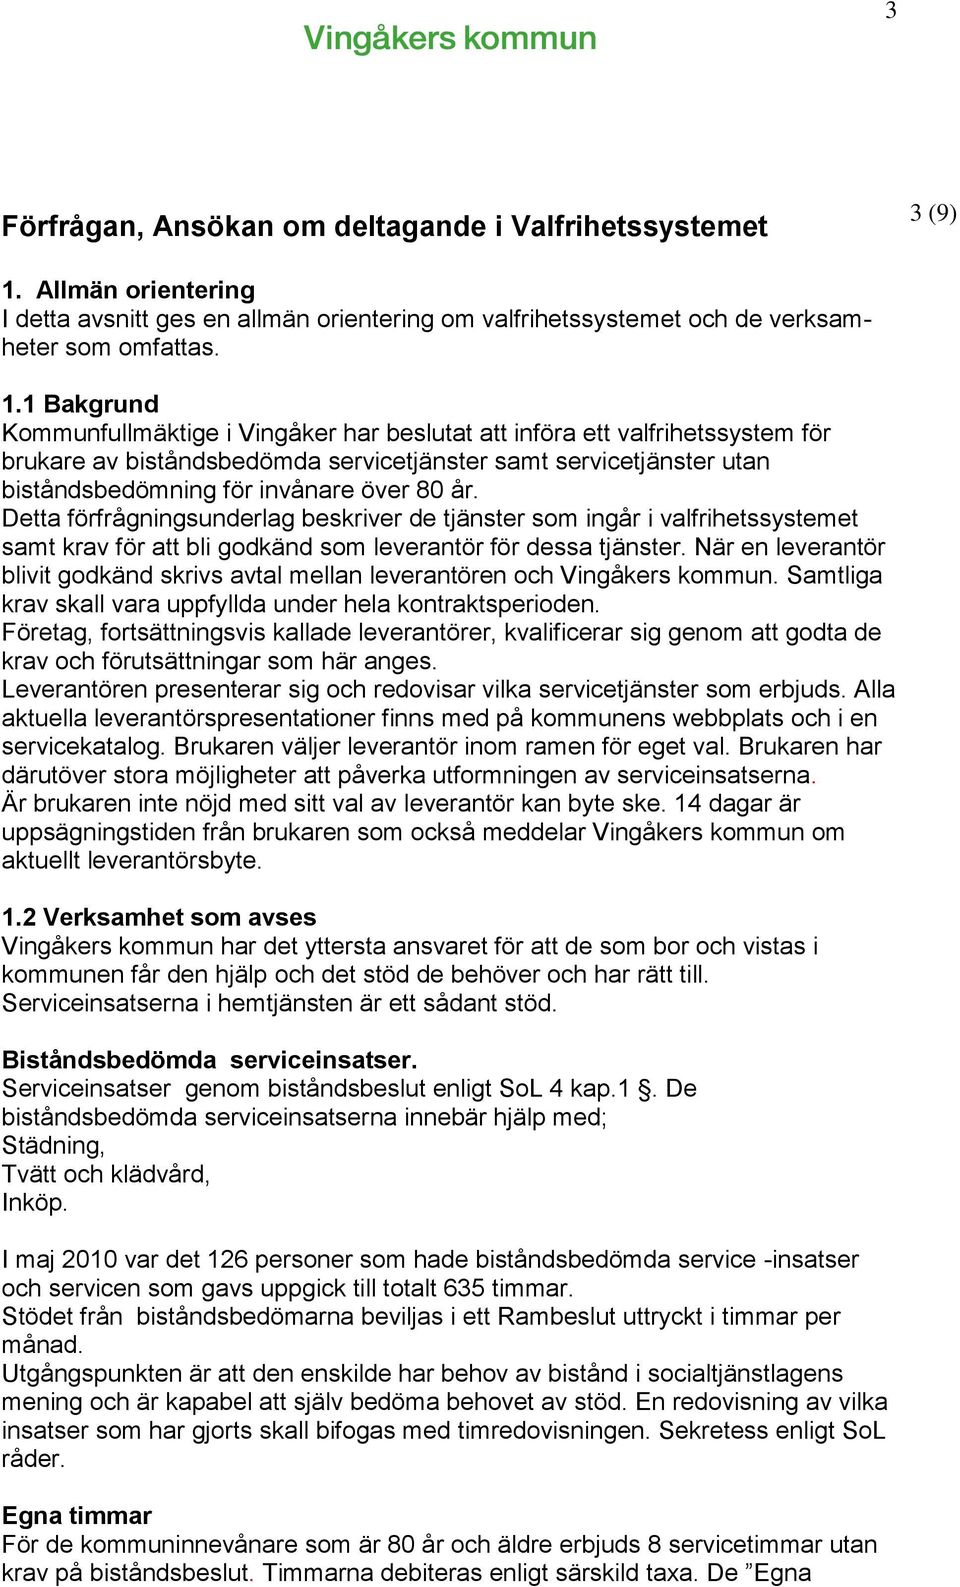 1 Bakgrund Kommunfullmäktige i Vingåker har beslutat att införa ett valfrihetssystem för brukare av biståndsbedömda servicetjänster samt servicetjänster utan biståndsbedömning för invånare över 80 år.